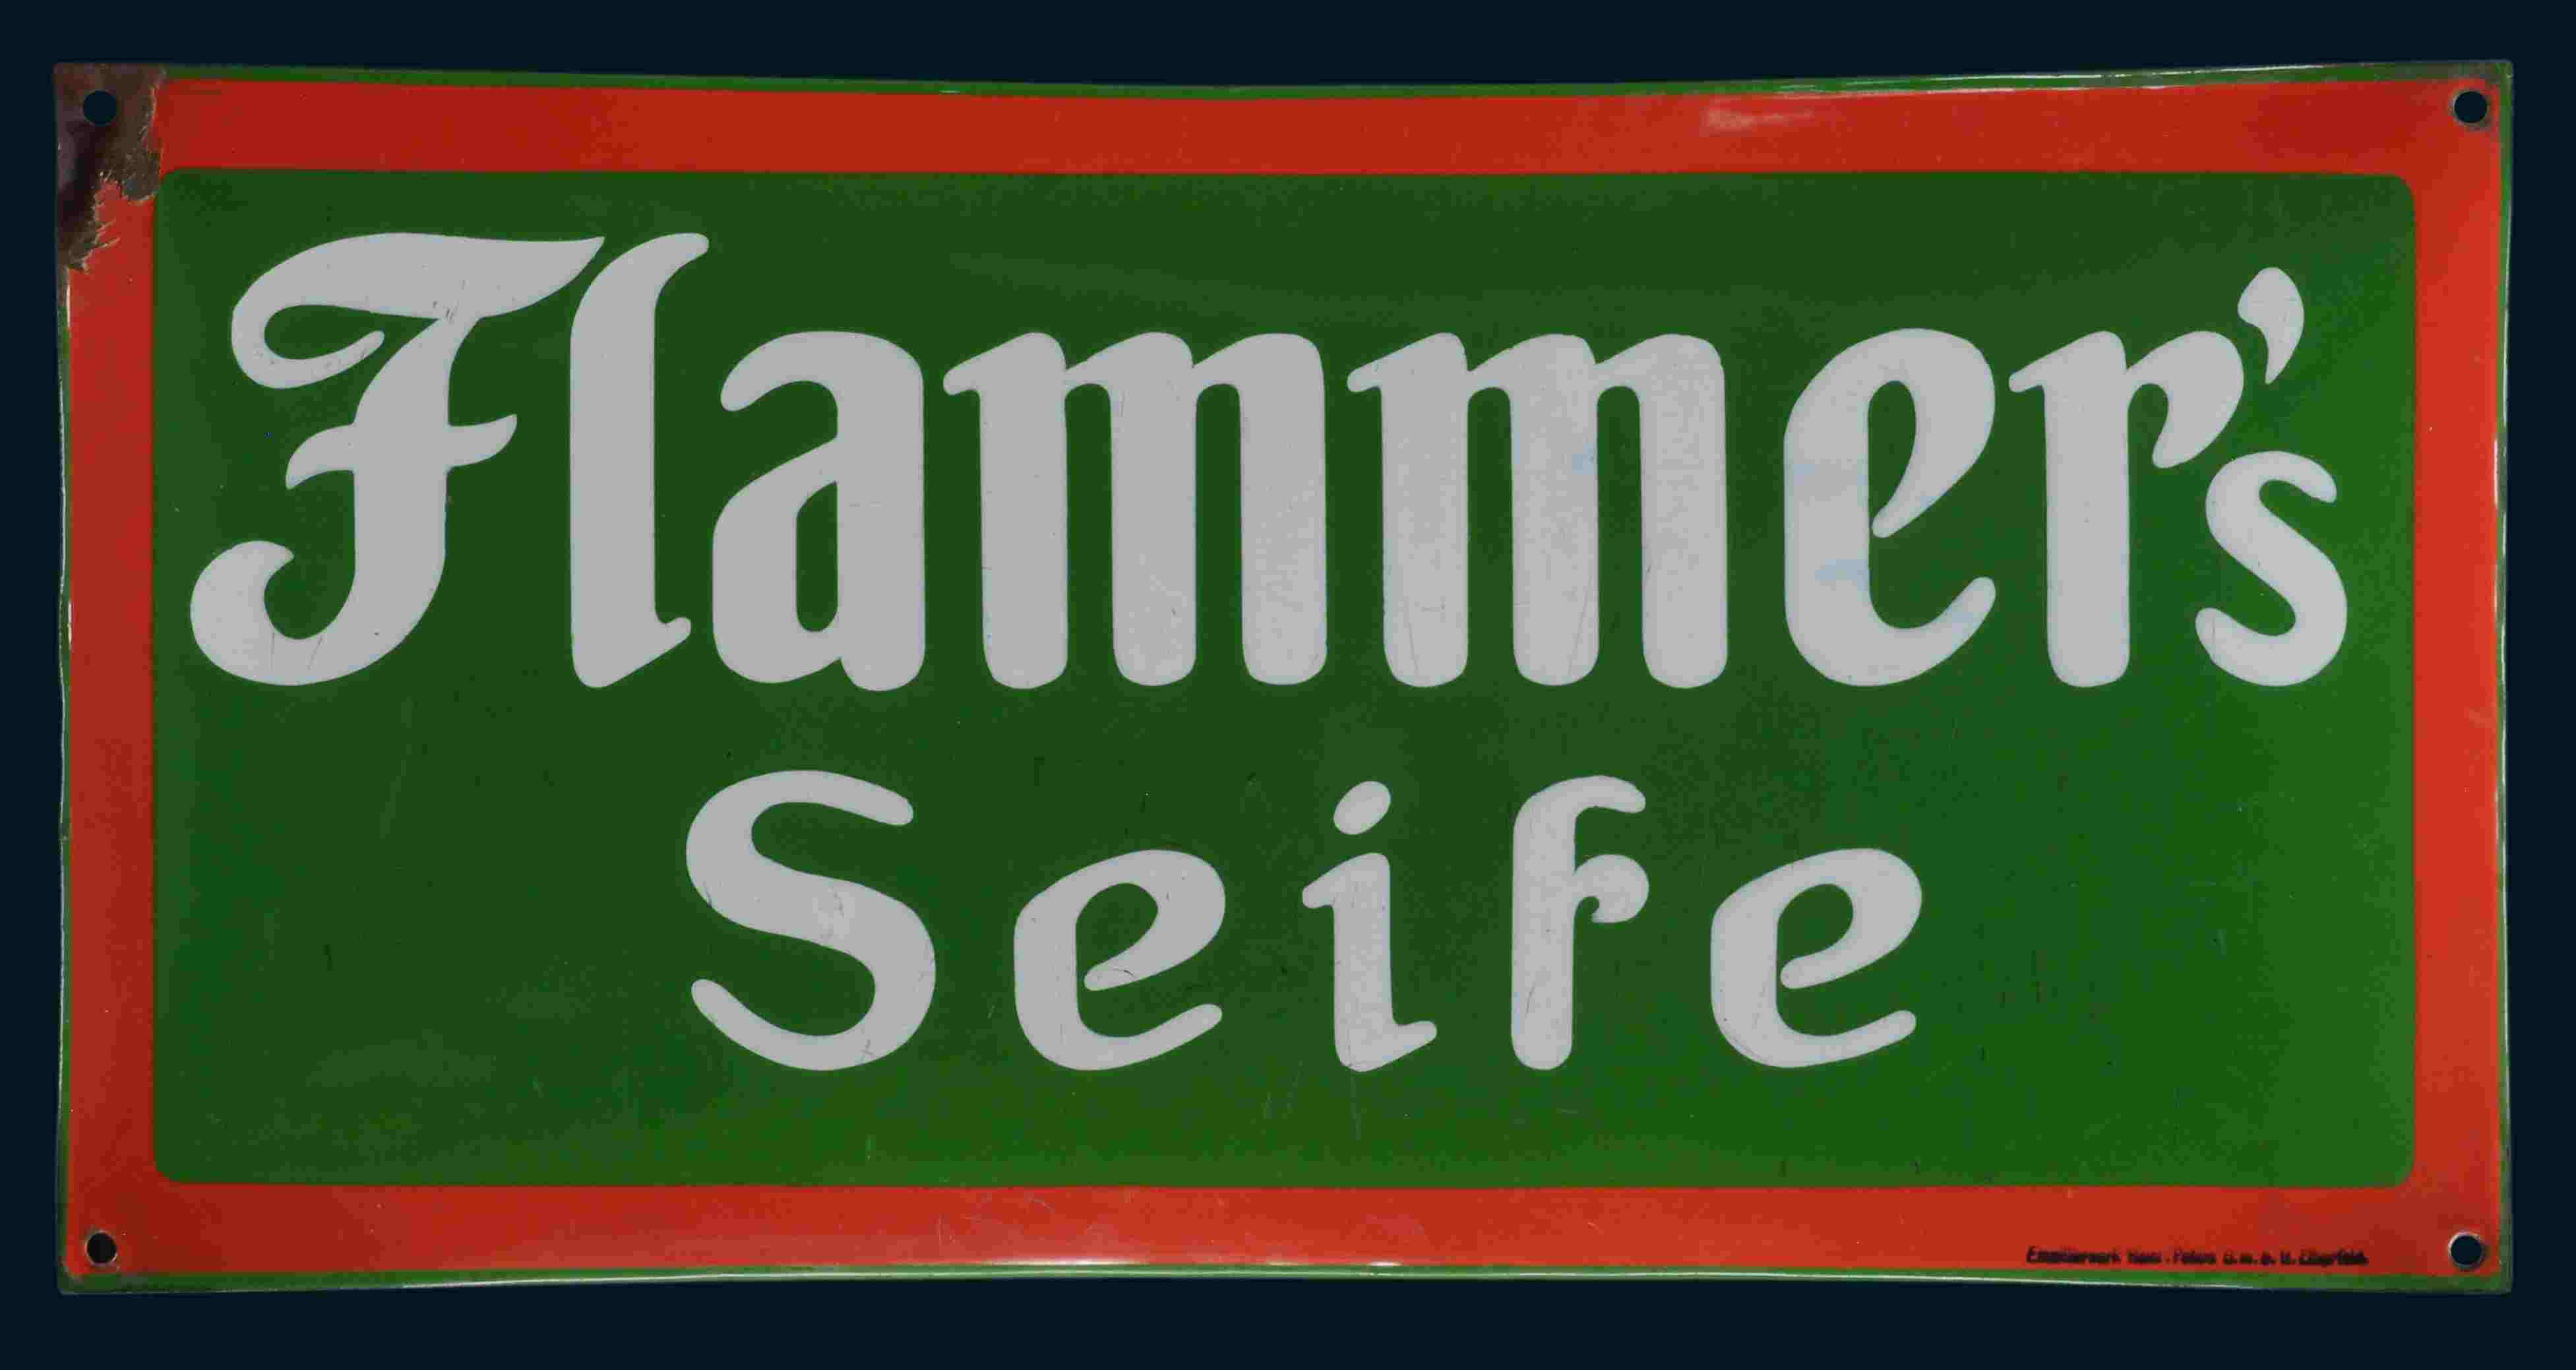 Flammer's Seife 